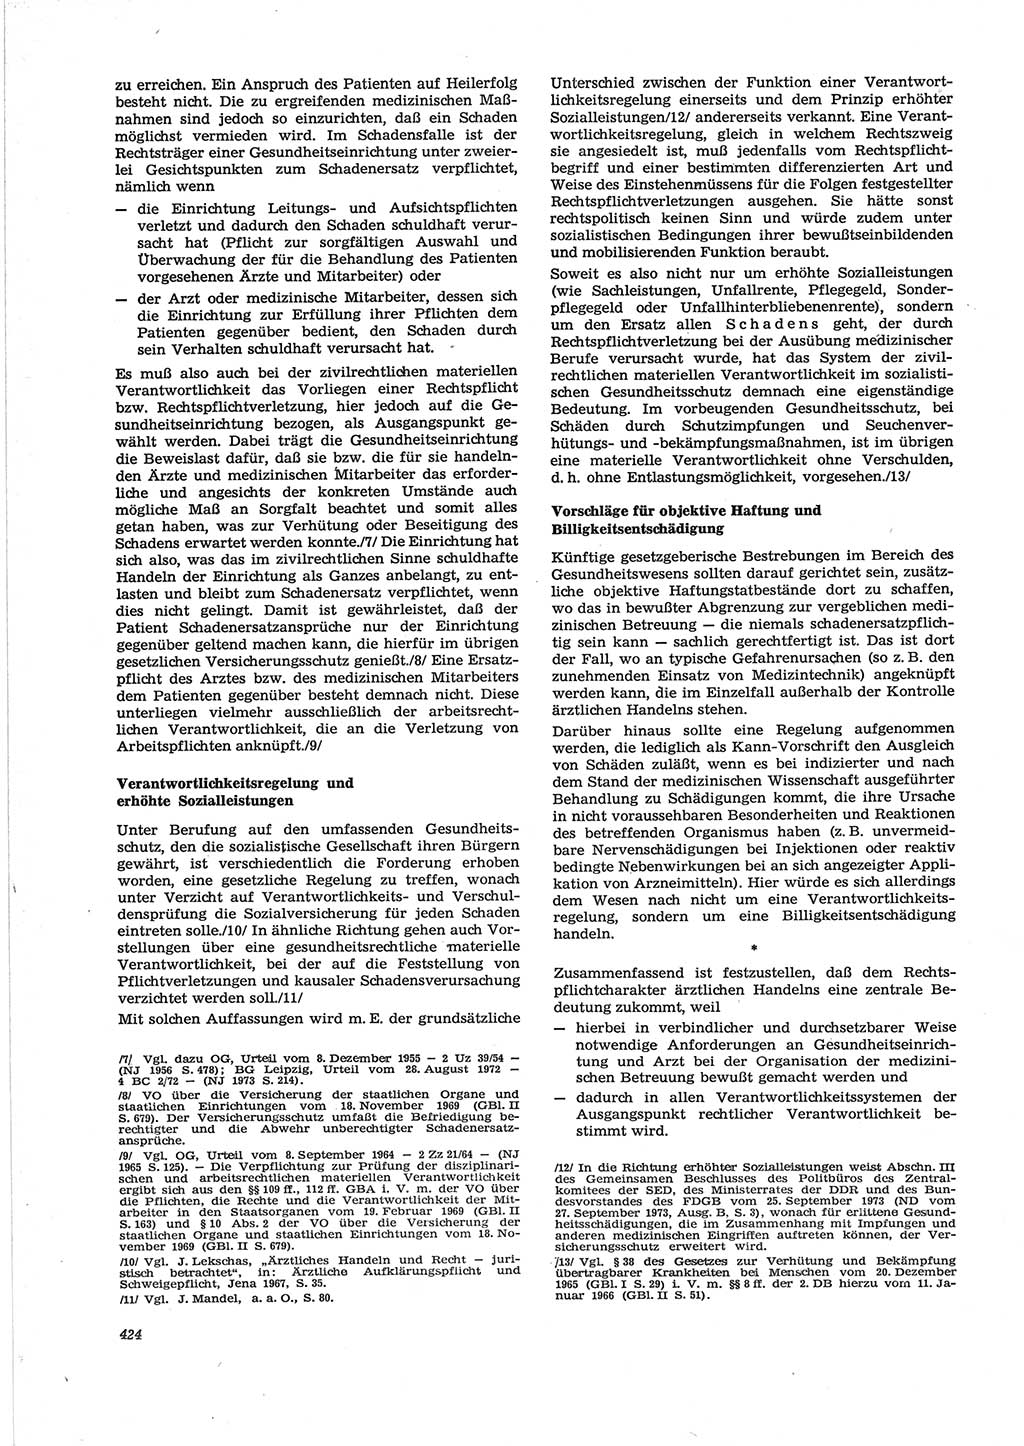 Neue Justiz (NJ), Zeitschrift für Recht und Rechtswissenschaft [Deutsche Demokratische Republik (DDR)], 28. Jahrgang 1974, Seite 424 (NJ DDR 1974, S. 424)